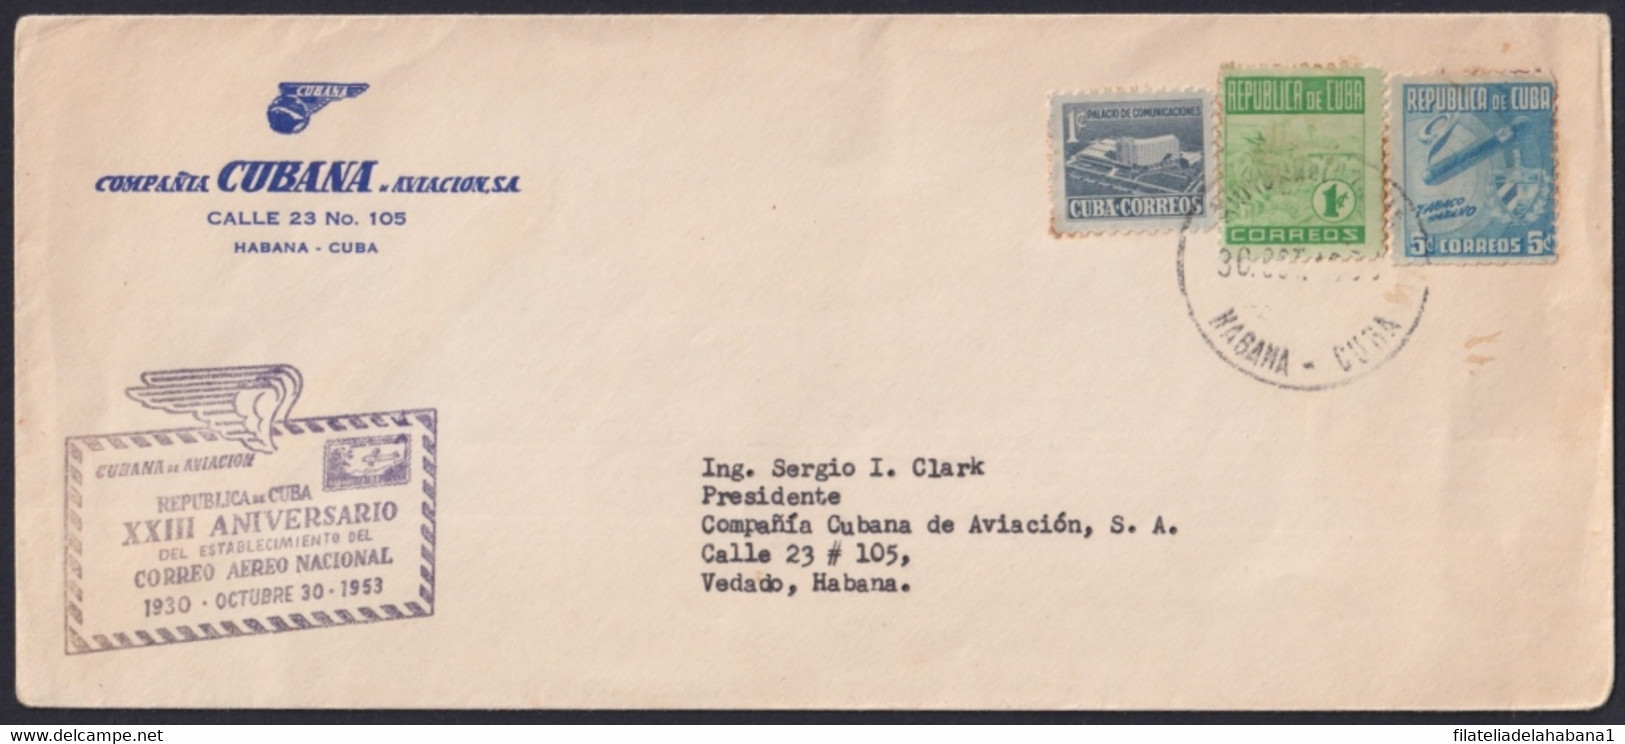 1953-CE-15 CUBA REPUBLICA LG-2142 XXIII ANIV NATIONAL AIR MAIL CANCEL COVER. - Storia Postale